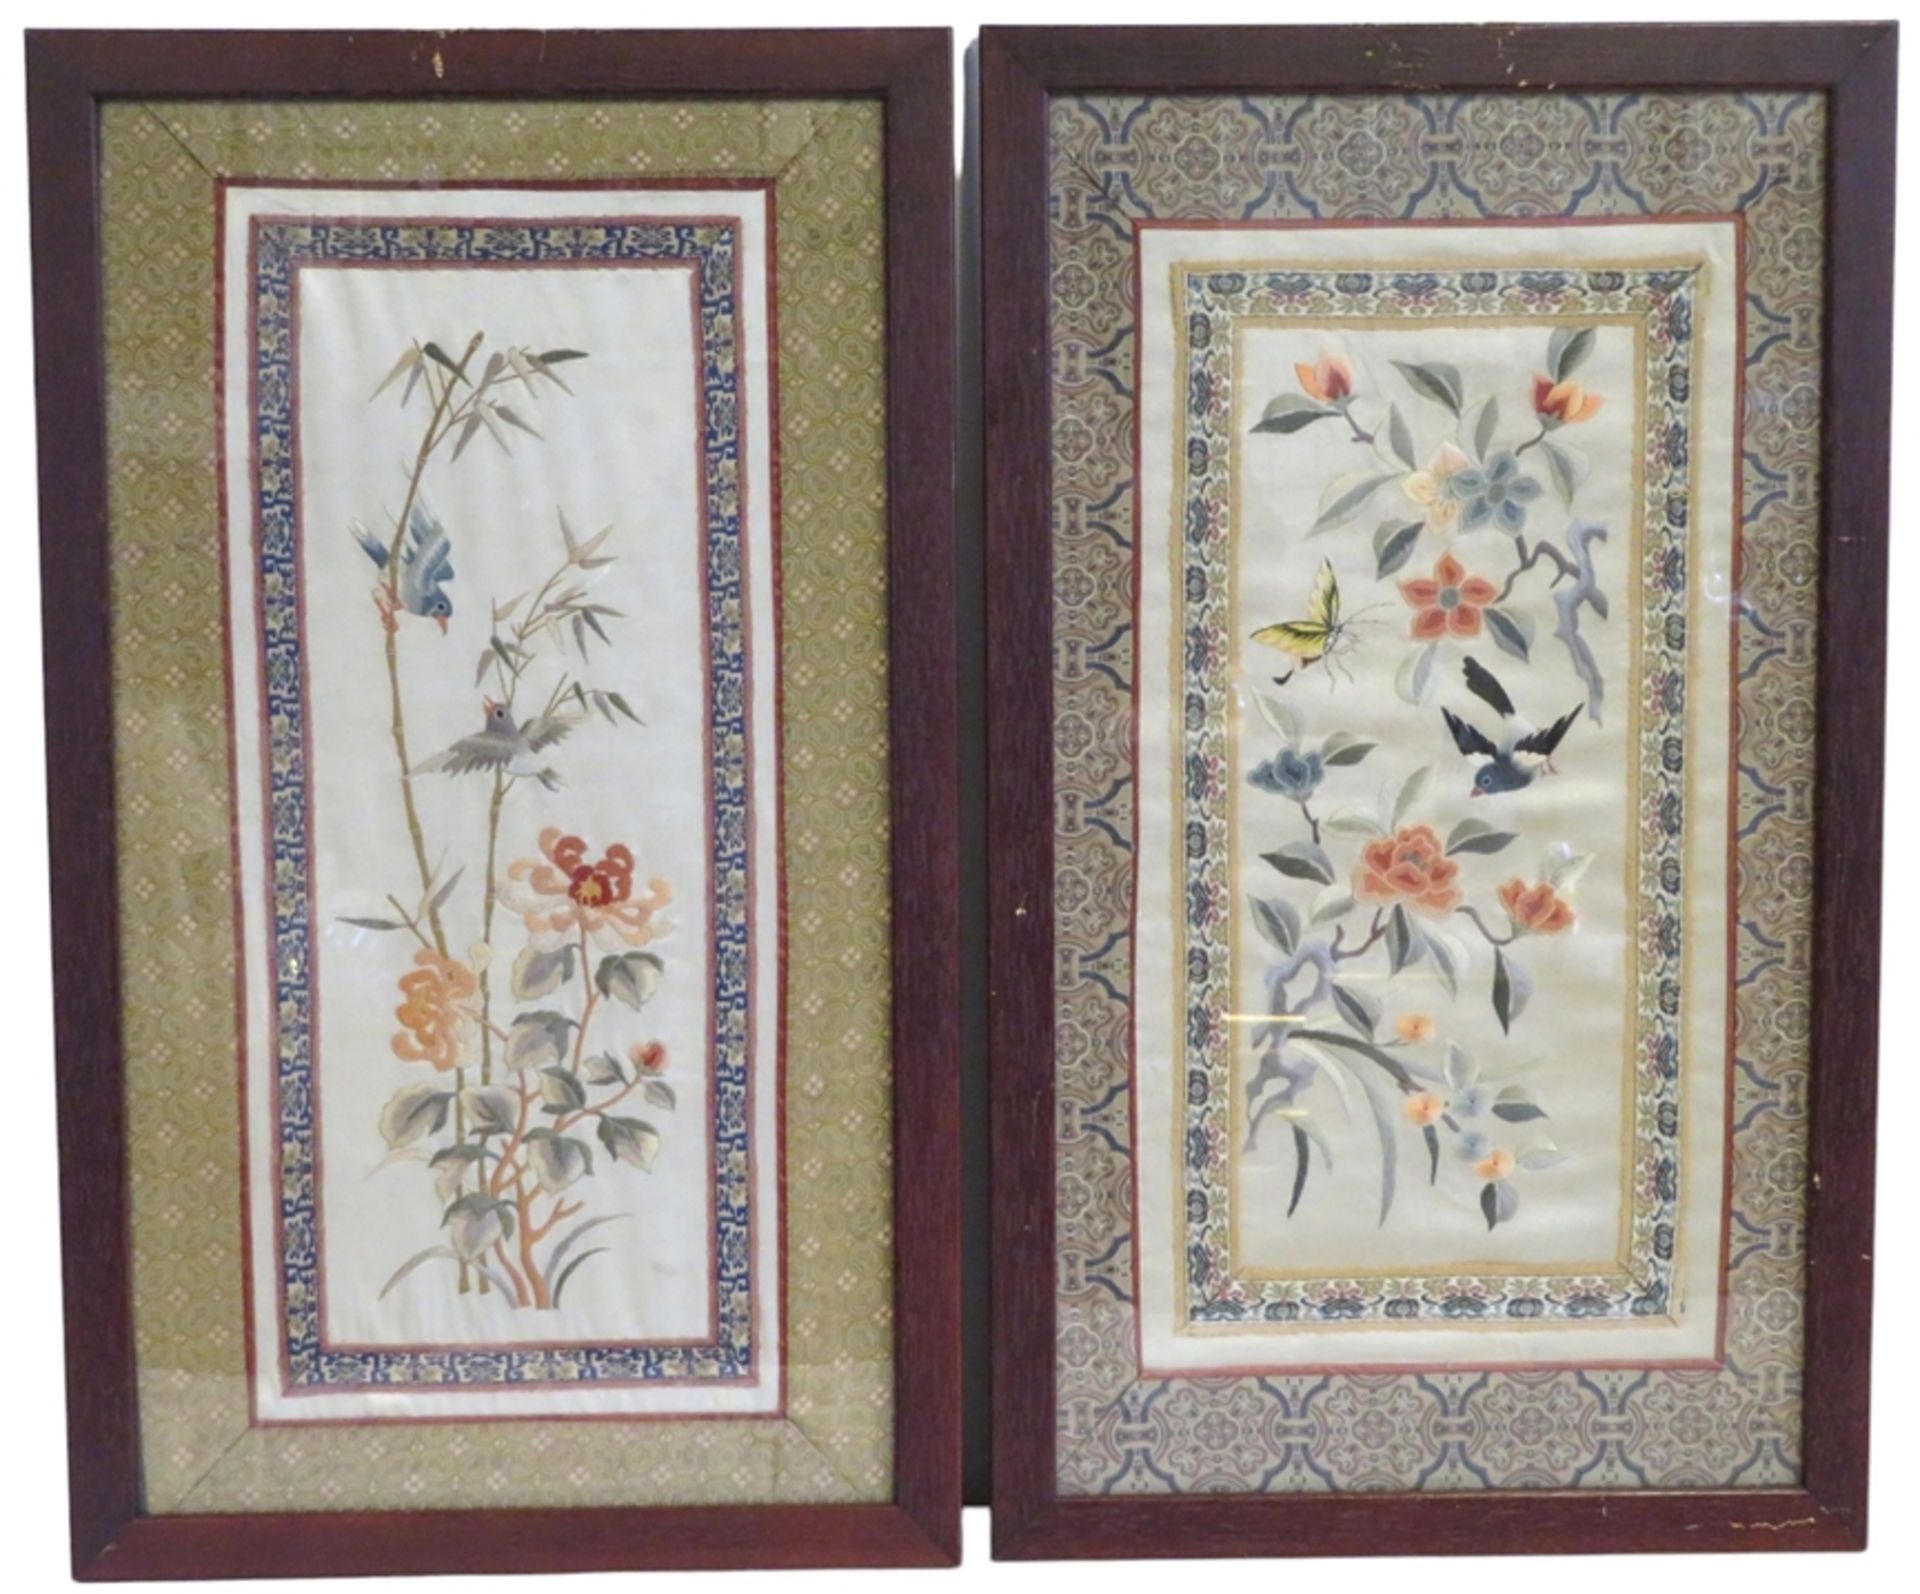 2 feine Seidenstickereien, Japan, um 1900, Dekor von Blüten und Vögeln, teils mit verbotenem Knoten